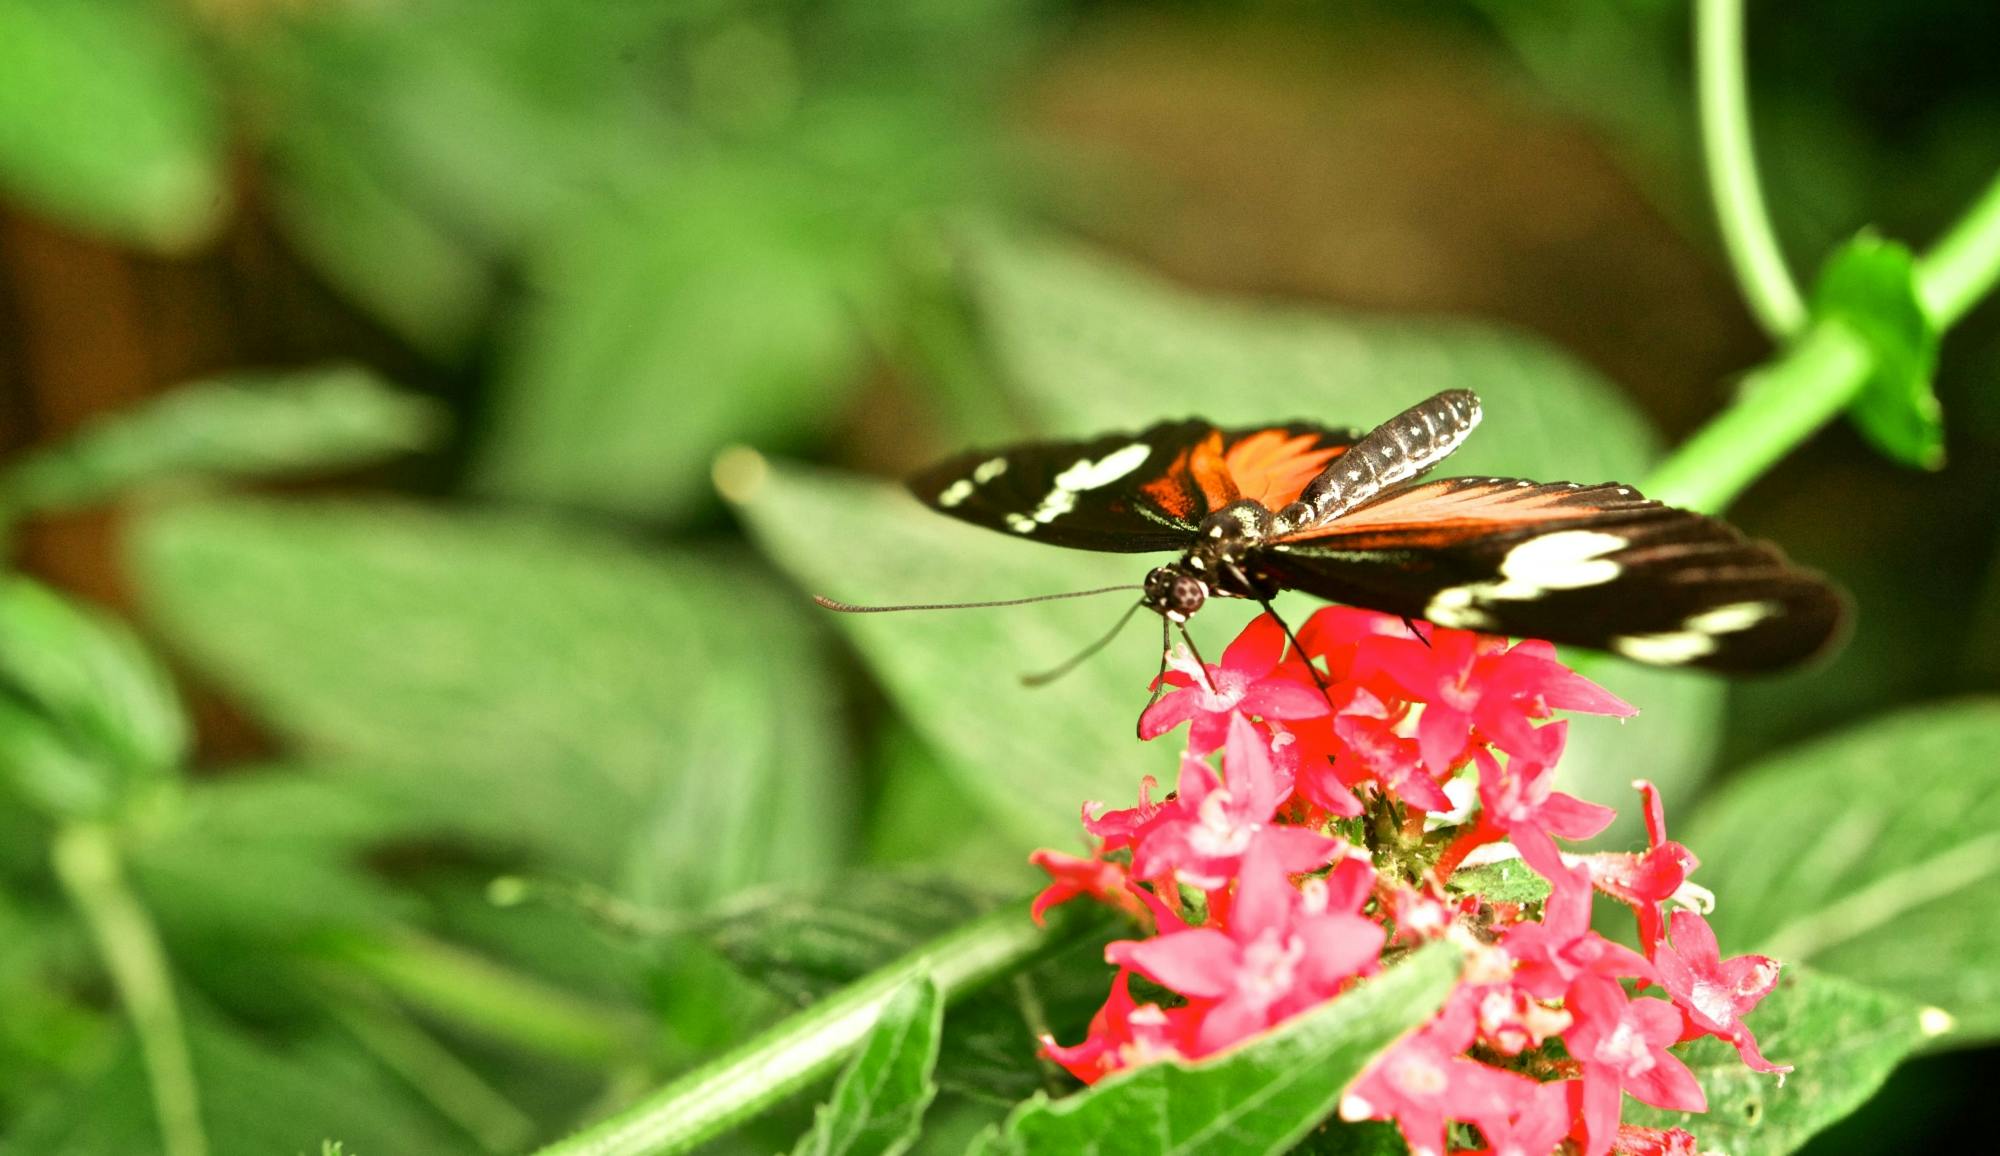 Selvatura Park Zipline & Butterfly Garden Tour